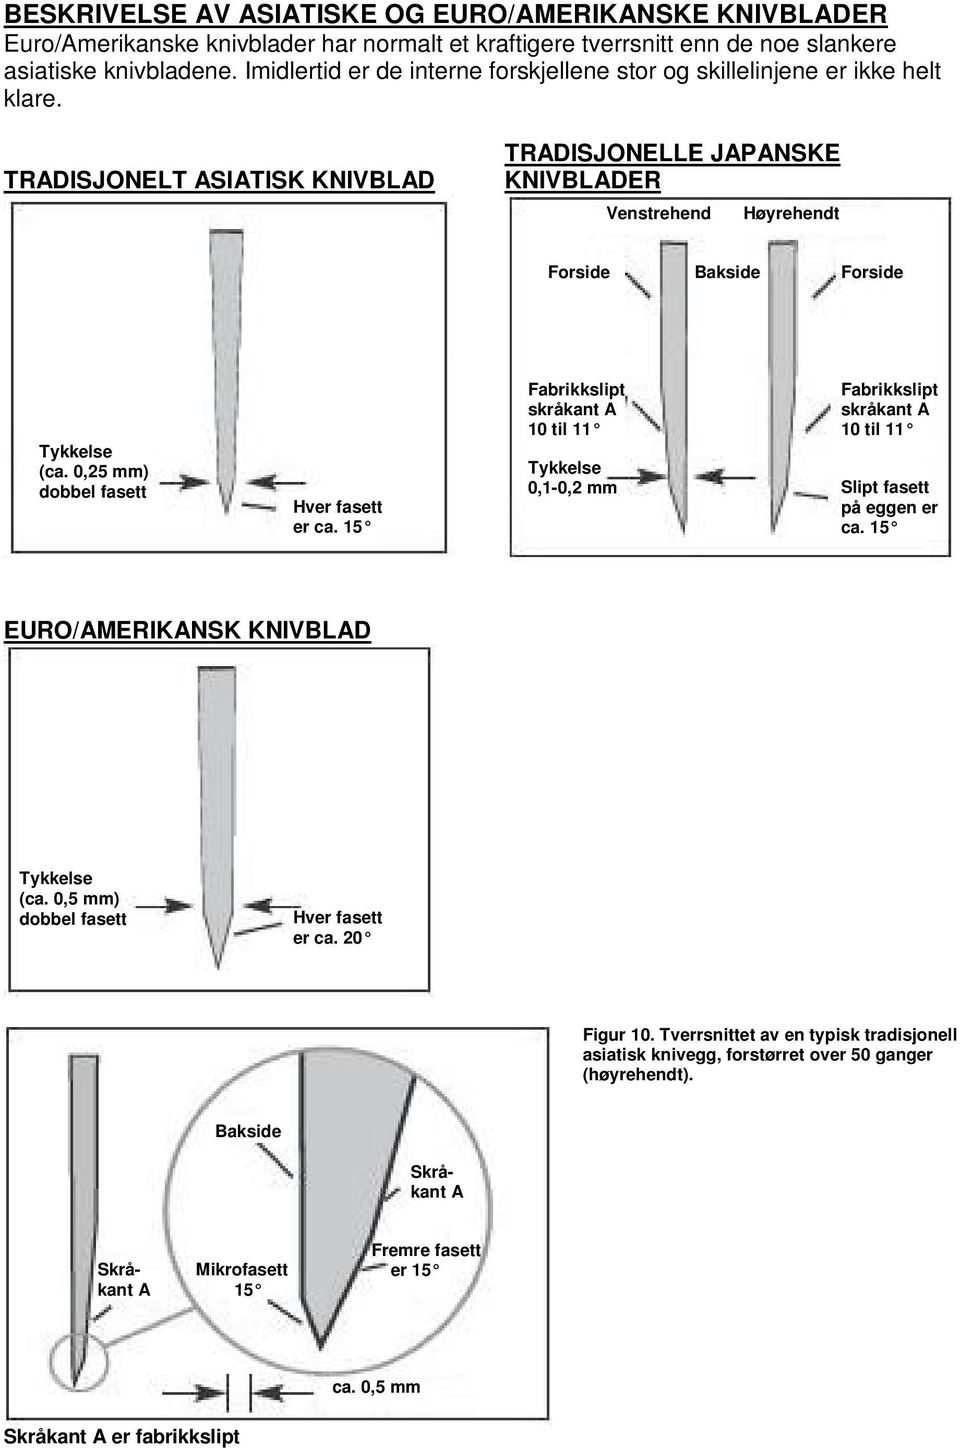 TRADISJONELT ASIATISK KNIVBLAD TRADISJONELLE JAPANSKE KNIVBLADER Venstrehend t Høyrehendt Forside Bakside Forside Tykkelse (ca. 0,25 mm) dobbel fasett Hver fasett er ca.